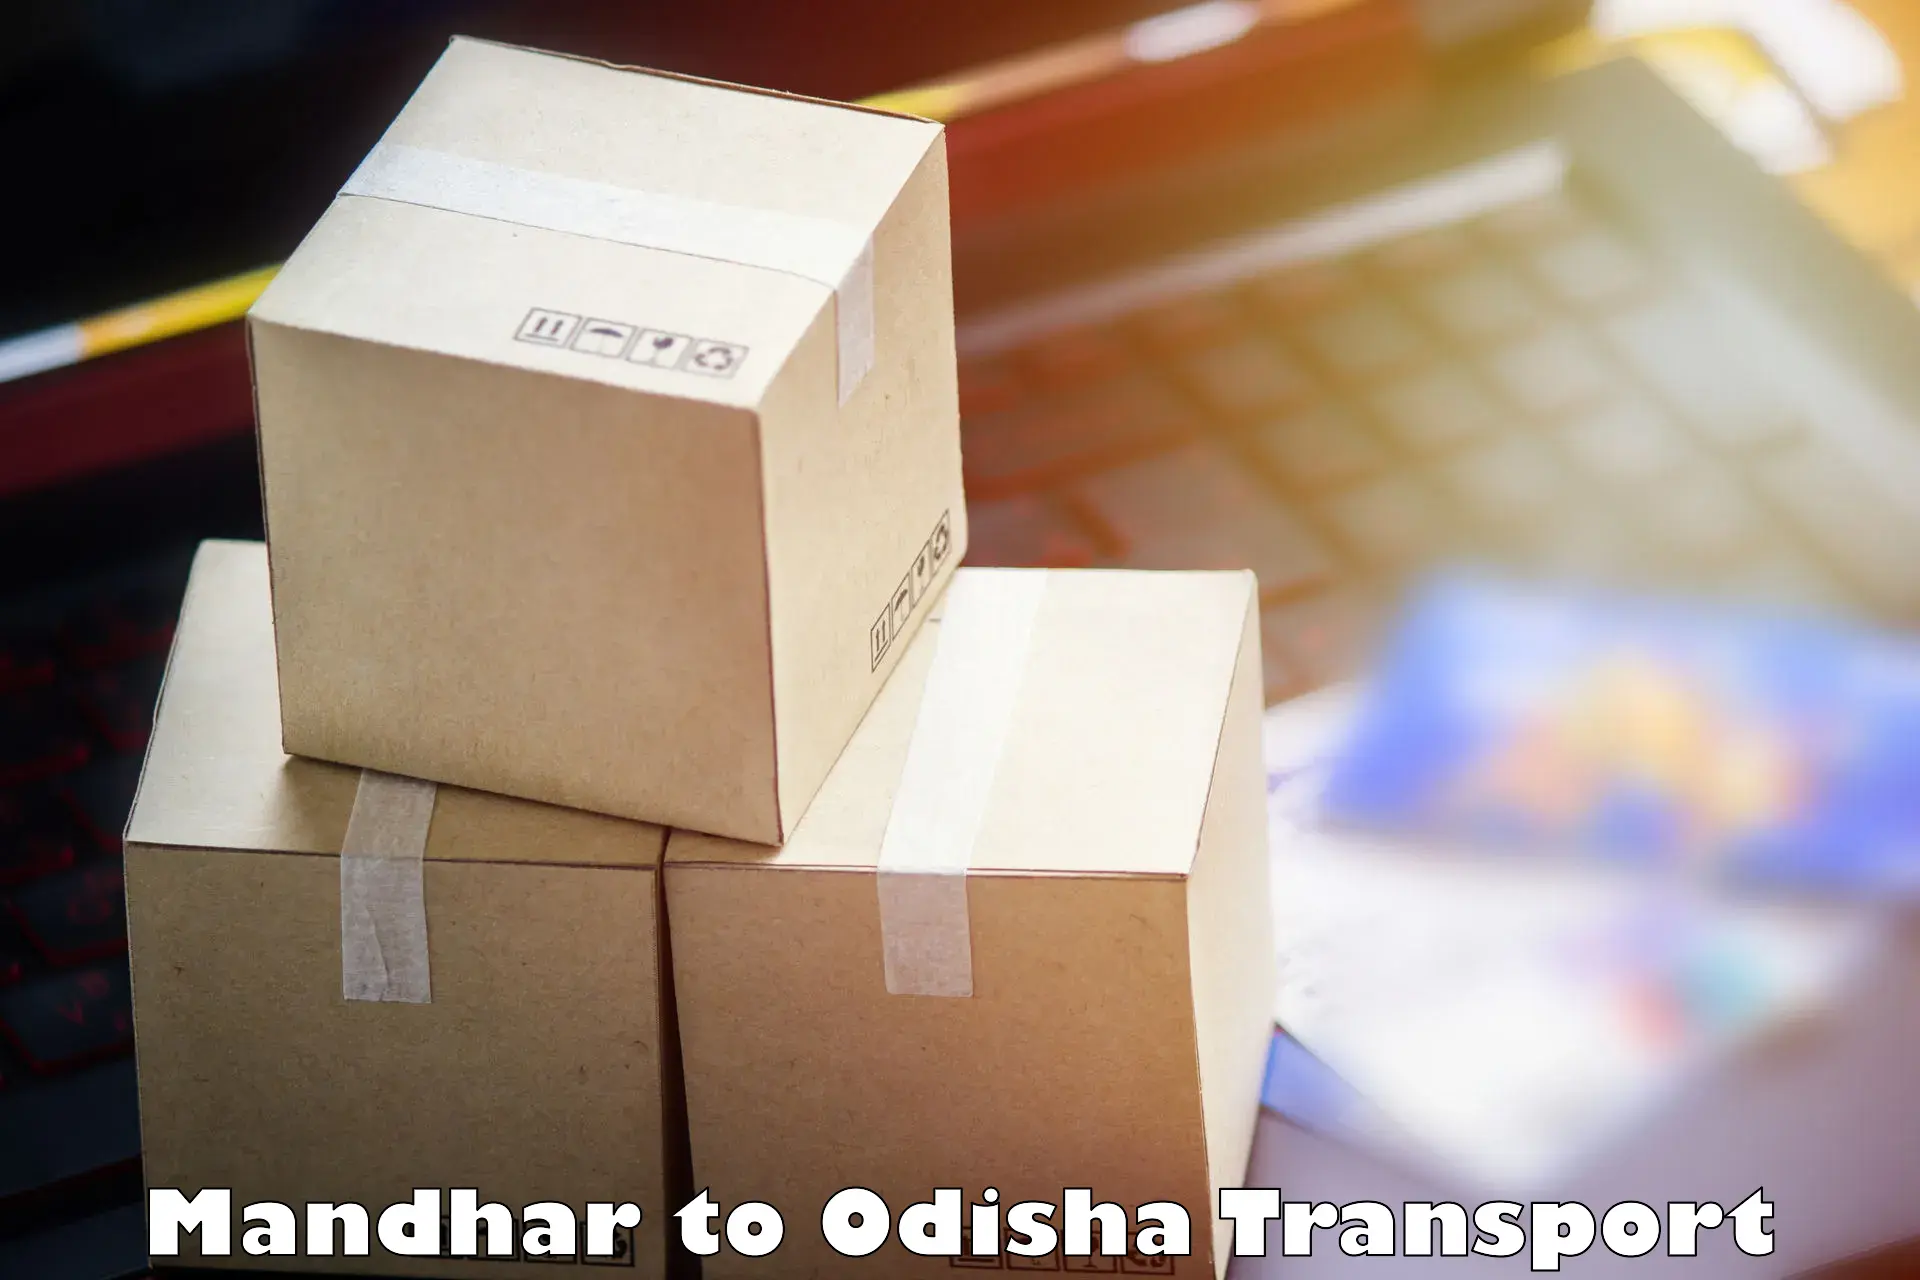 Online transport service Mandhar to Baleswar